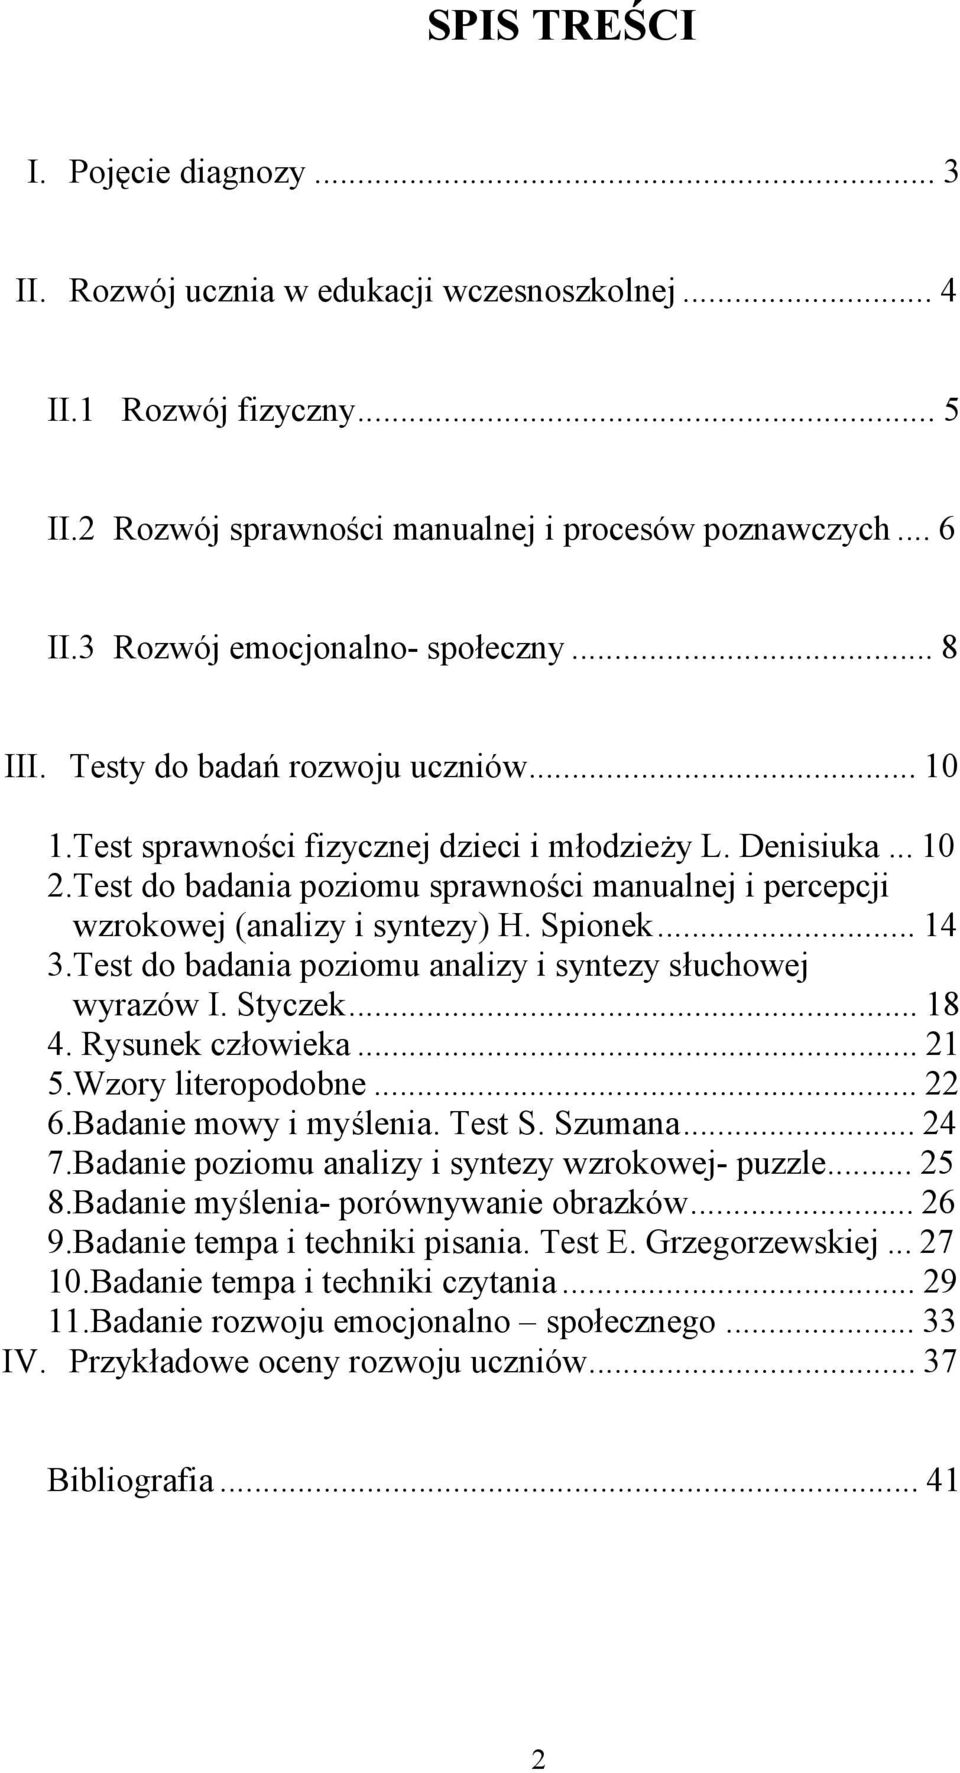 Test do badania poziomu sprawności manualnej i percepcji wzrokowej (analizy i syntezy) H. Spionek...14 3.Test do badania poziomu analizy i syntezy słuchowej wyrazów I. Styczek...18 4.